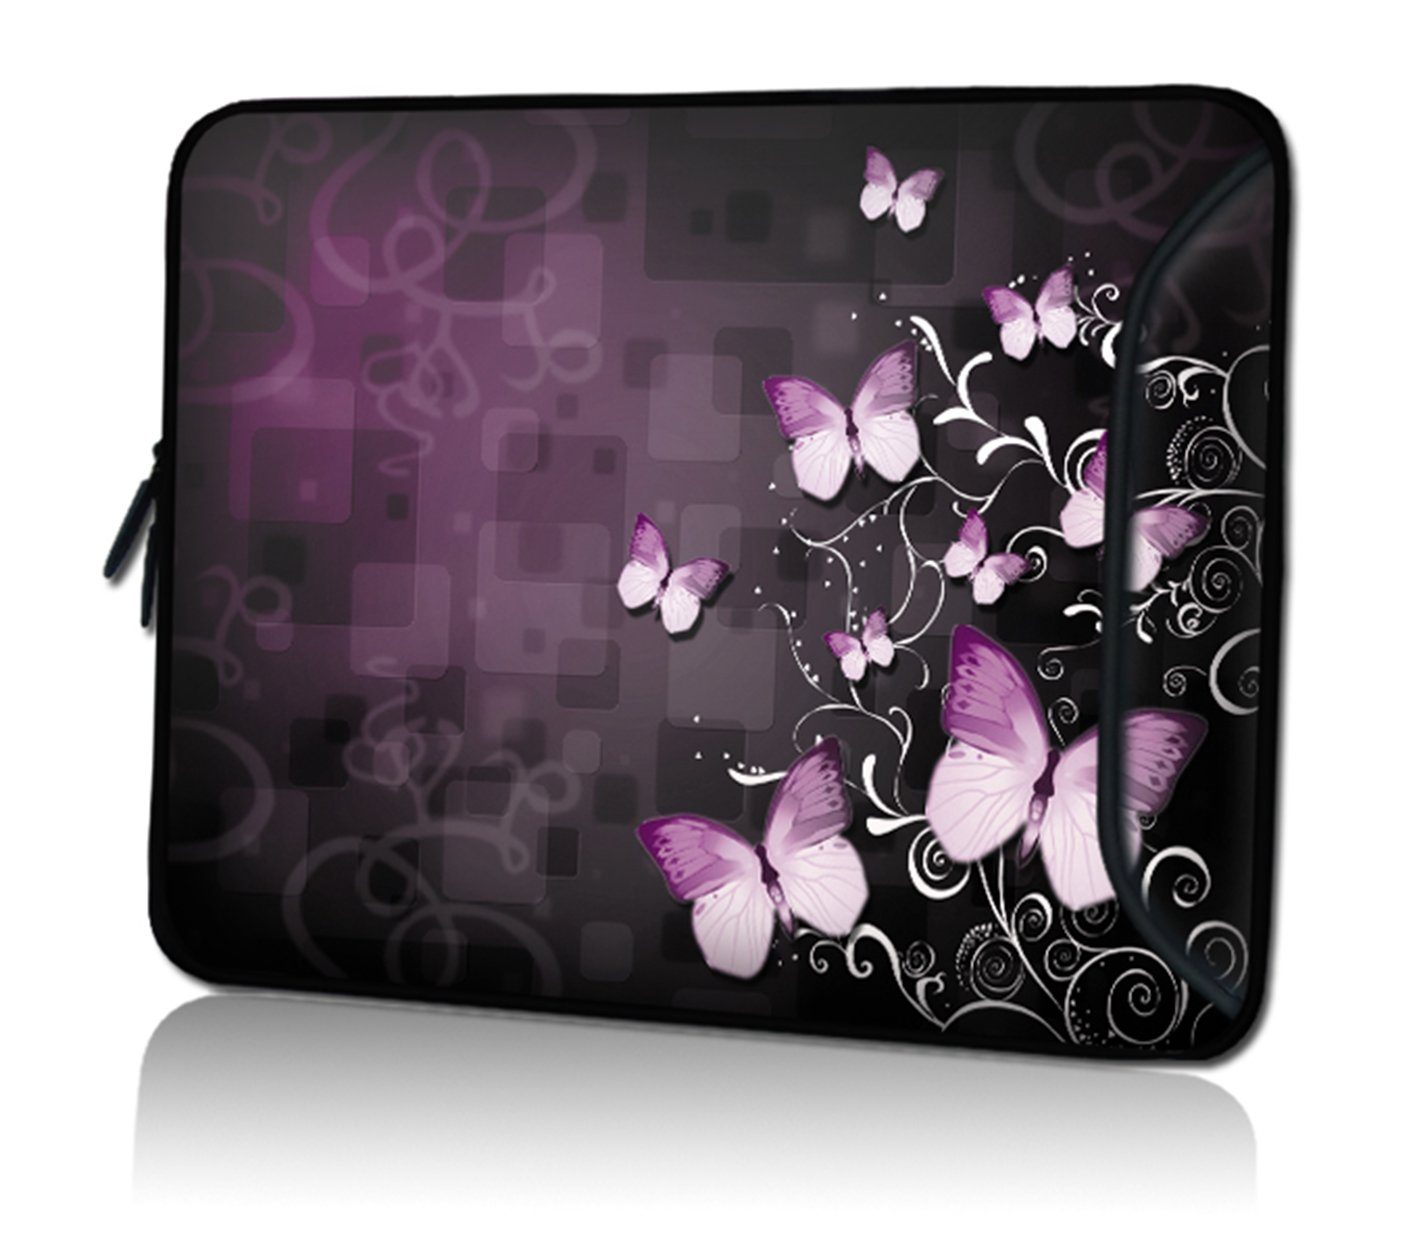 wortek Laptoptasche für Laptops bis 15,4", Schmetterling Schwarz Pink, Wasserabweisend